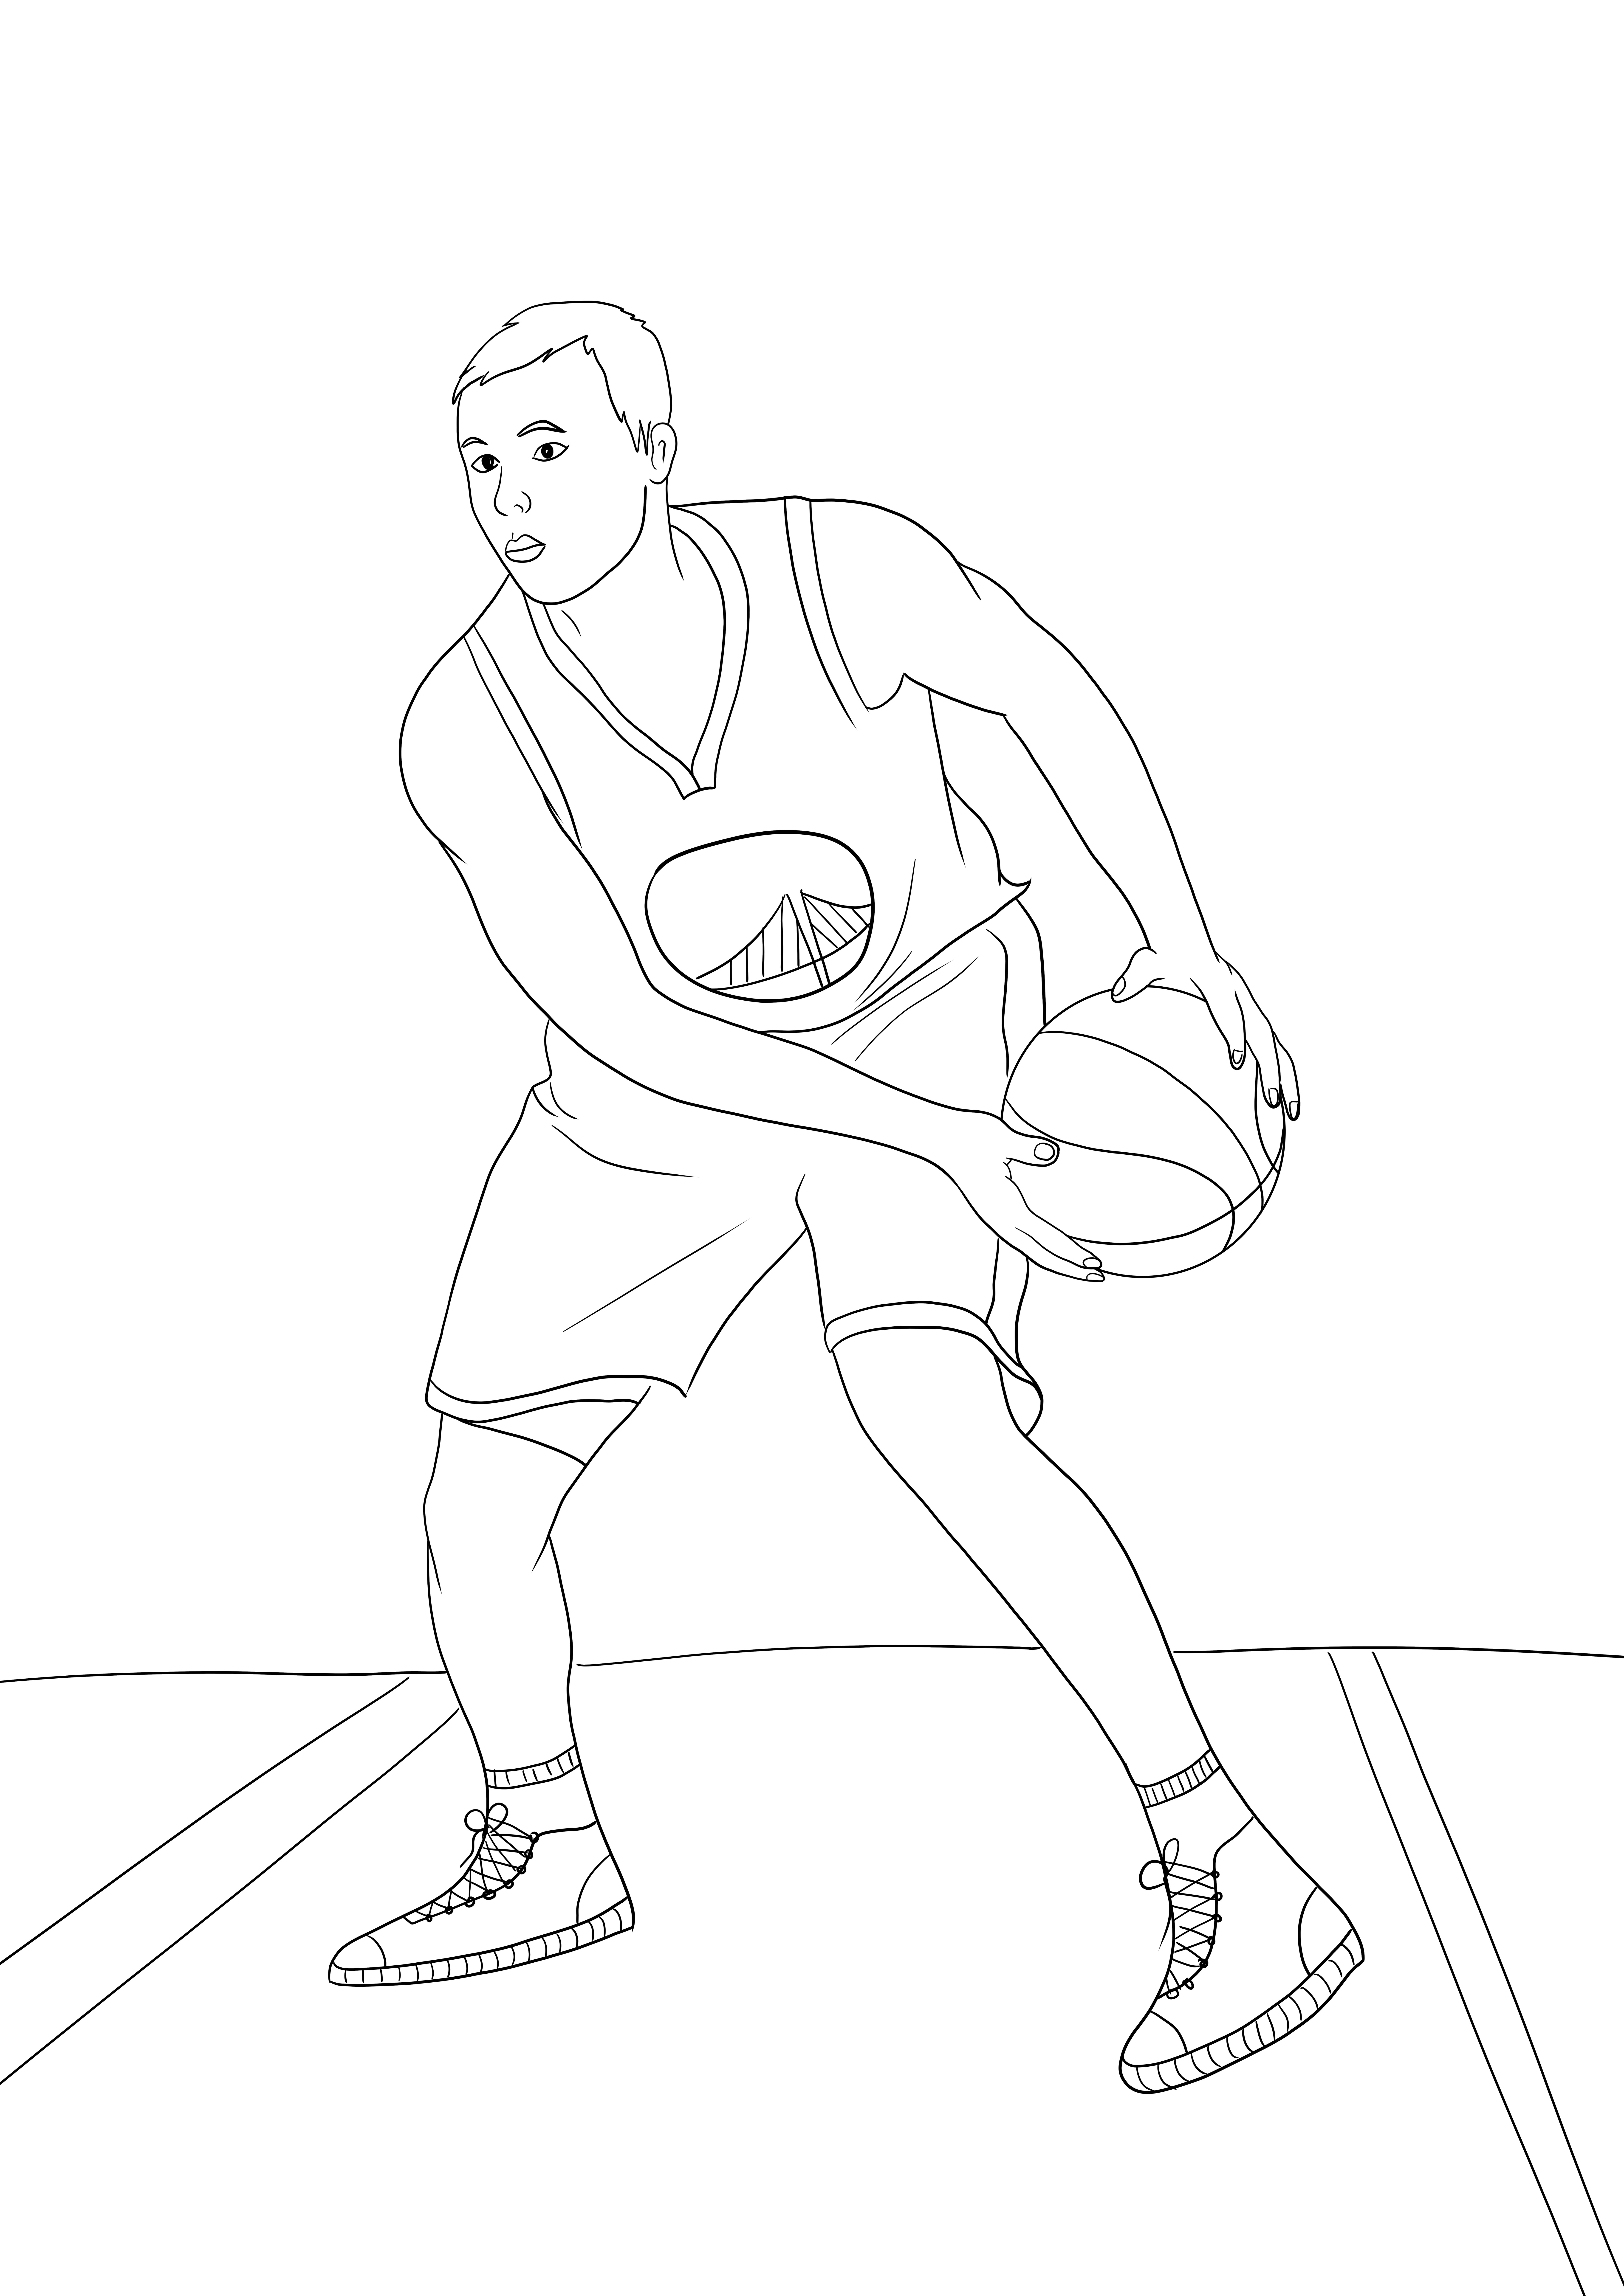 NBA'den Stephen Curry basit boyama ve ücretsiz indirme resmi